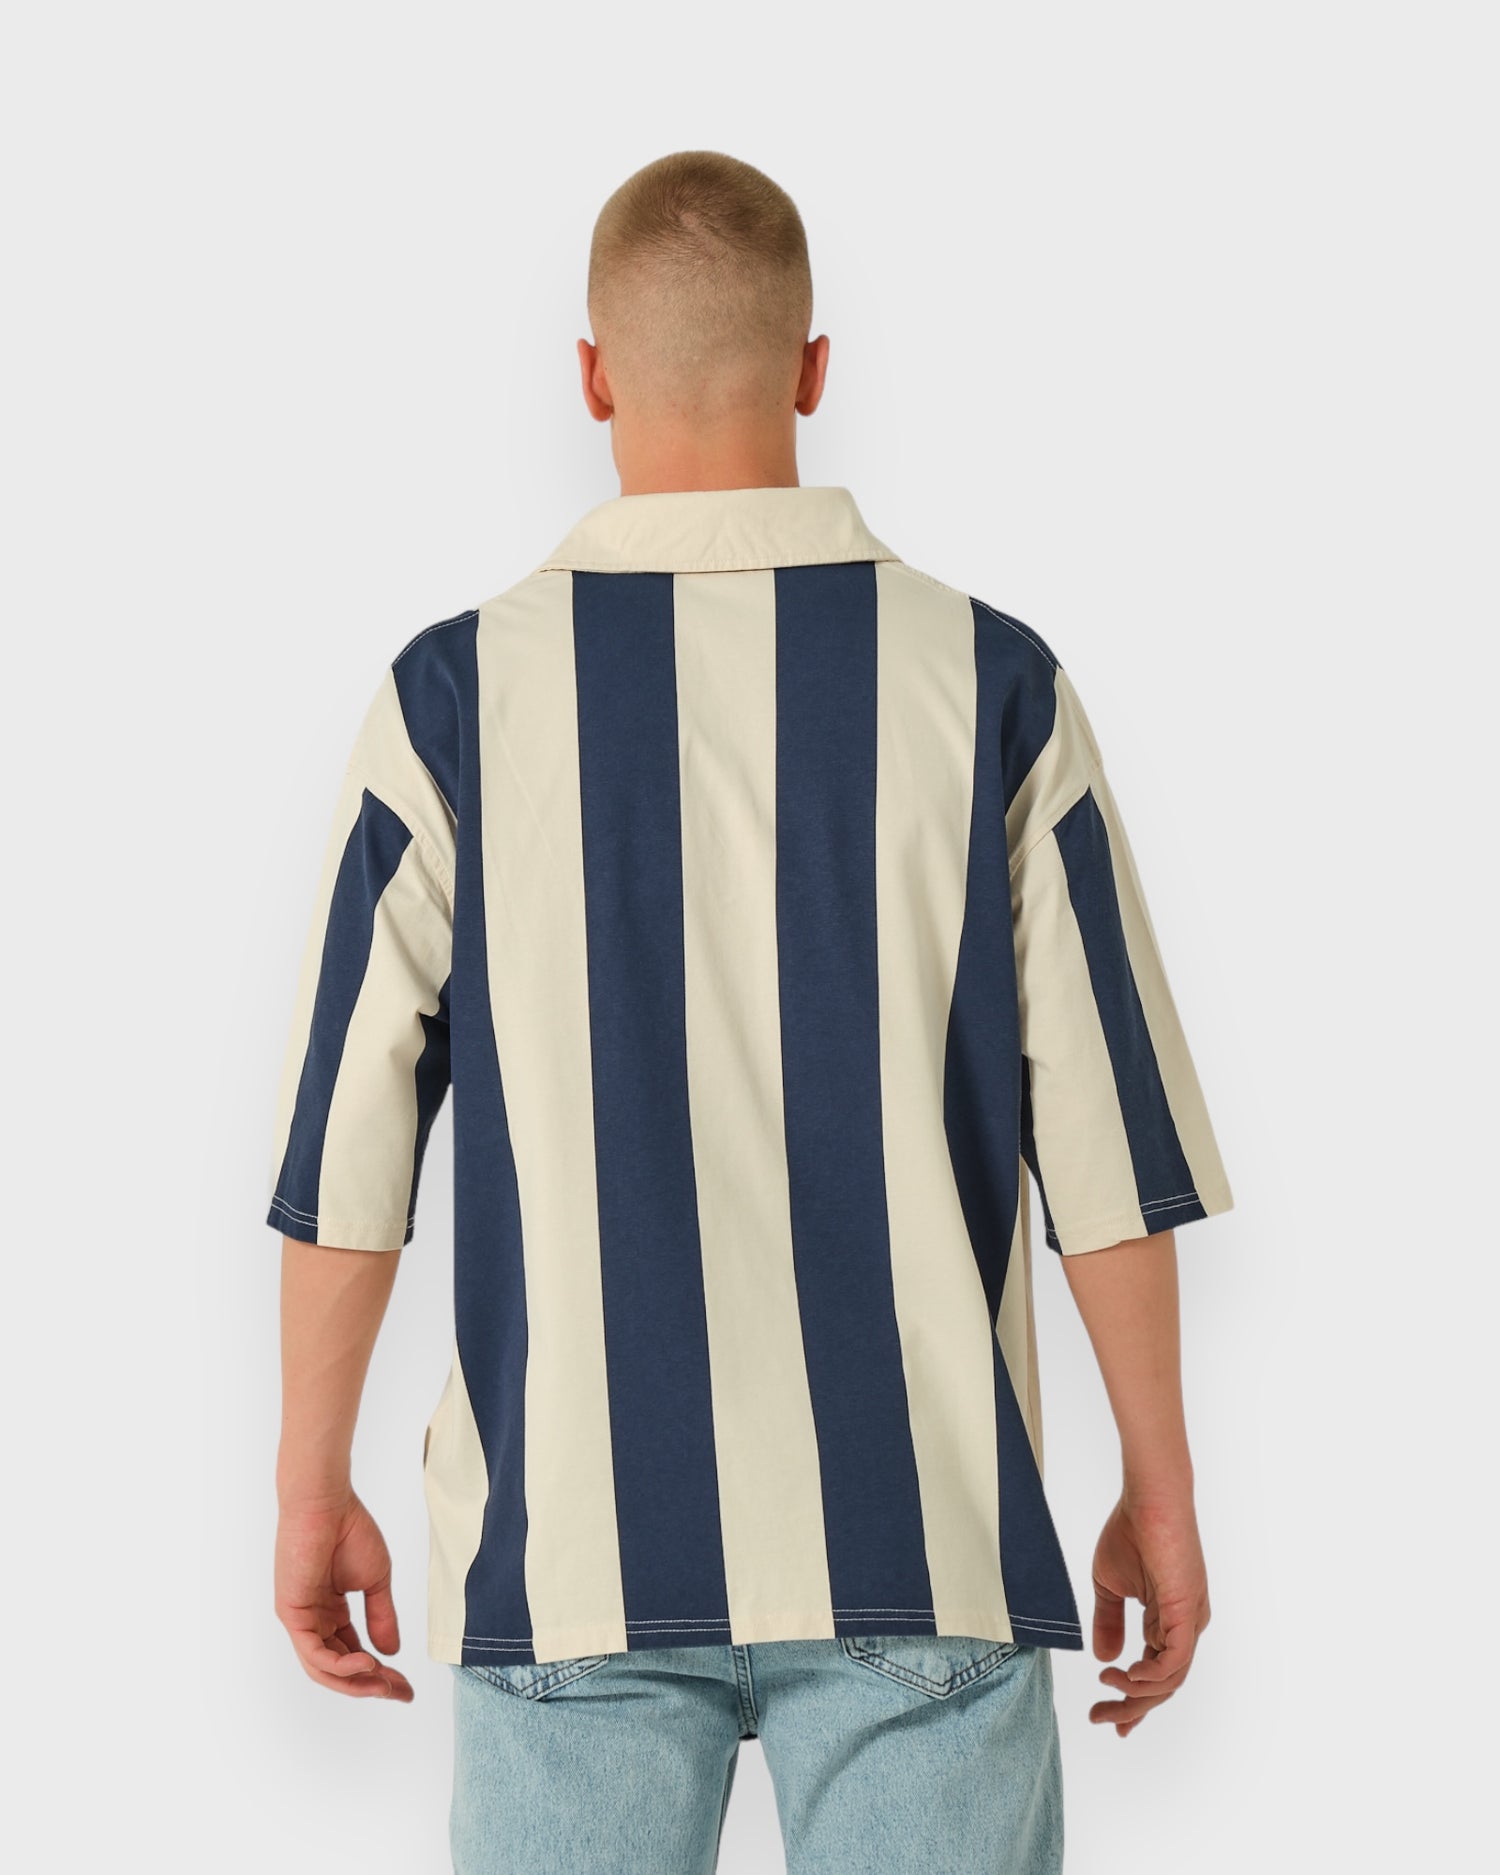 Çubuklu Polo Yaka T-shirt - Lacivert